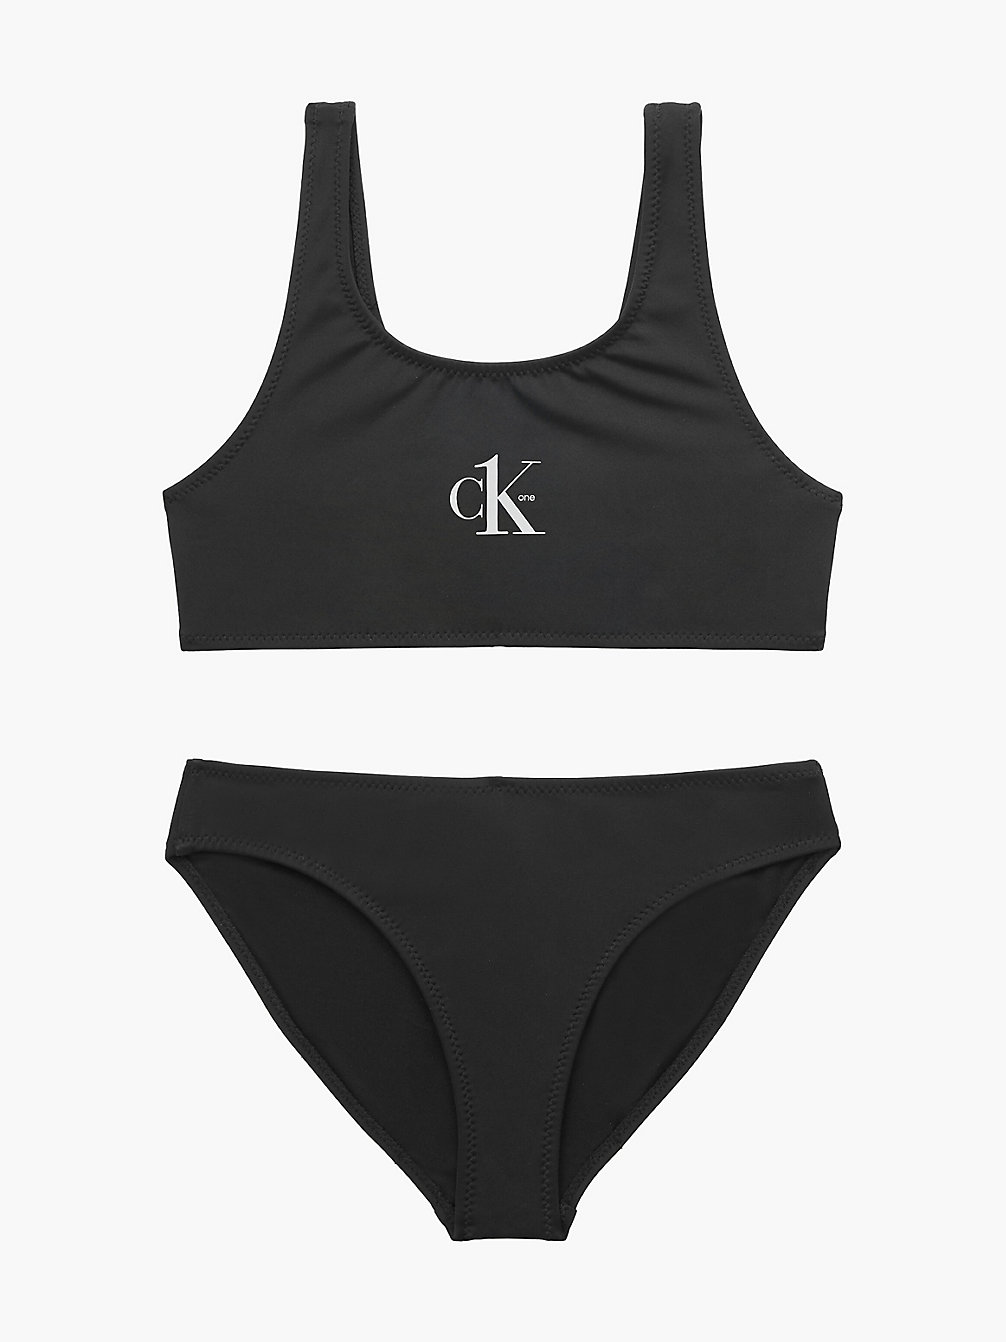 PVH BLACK Girls Bralette Bikini Set - CK One undefined girls Calvin Klein